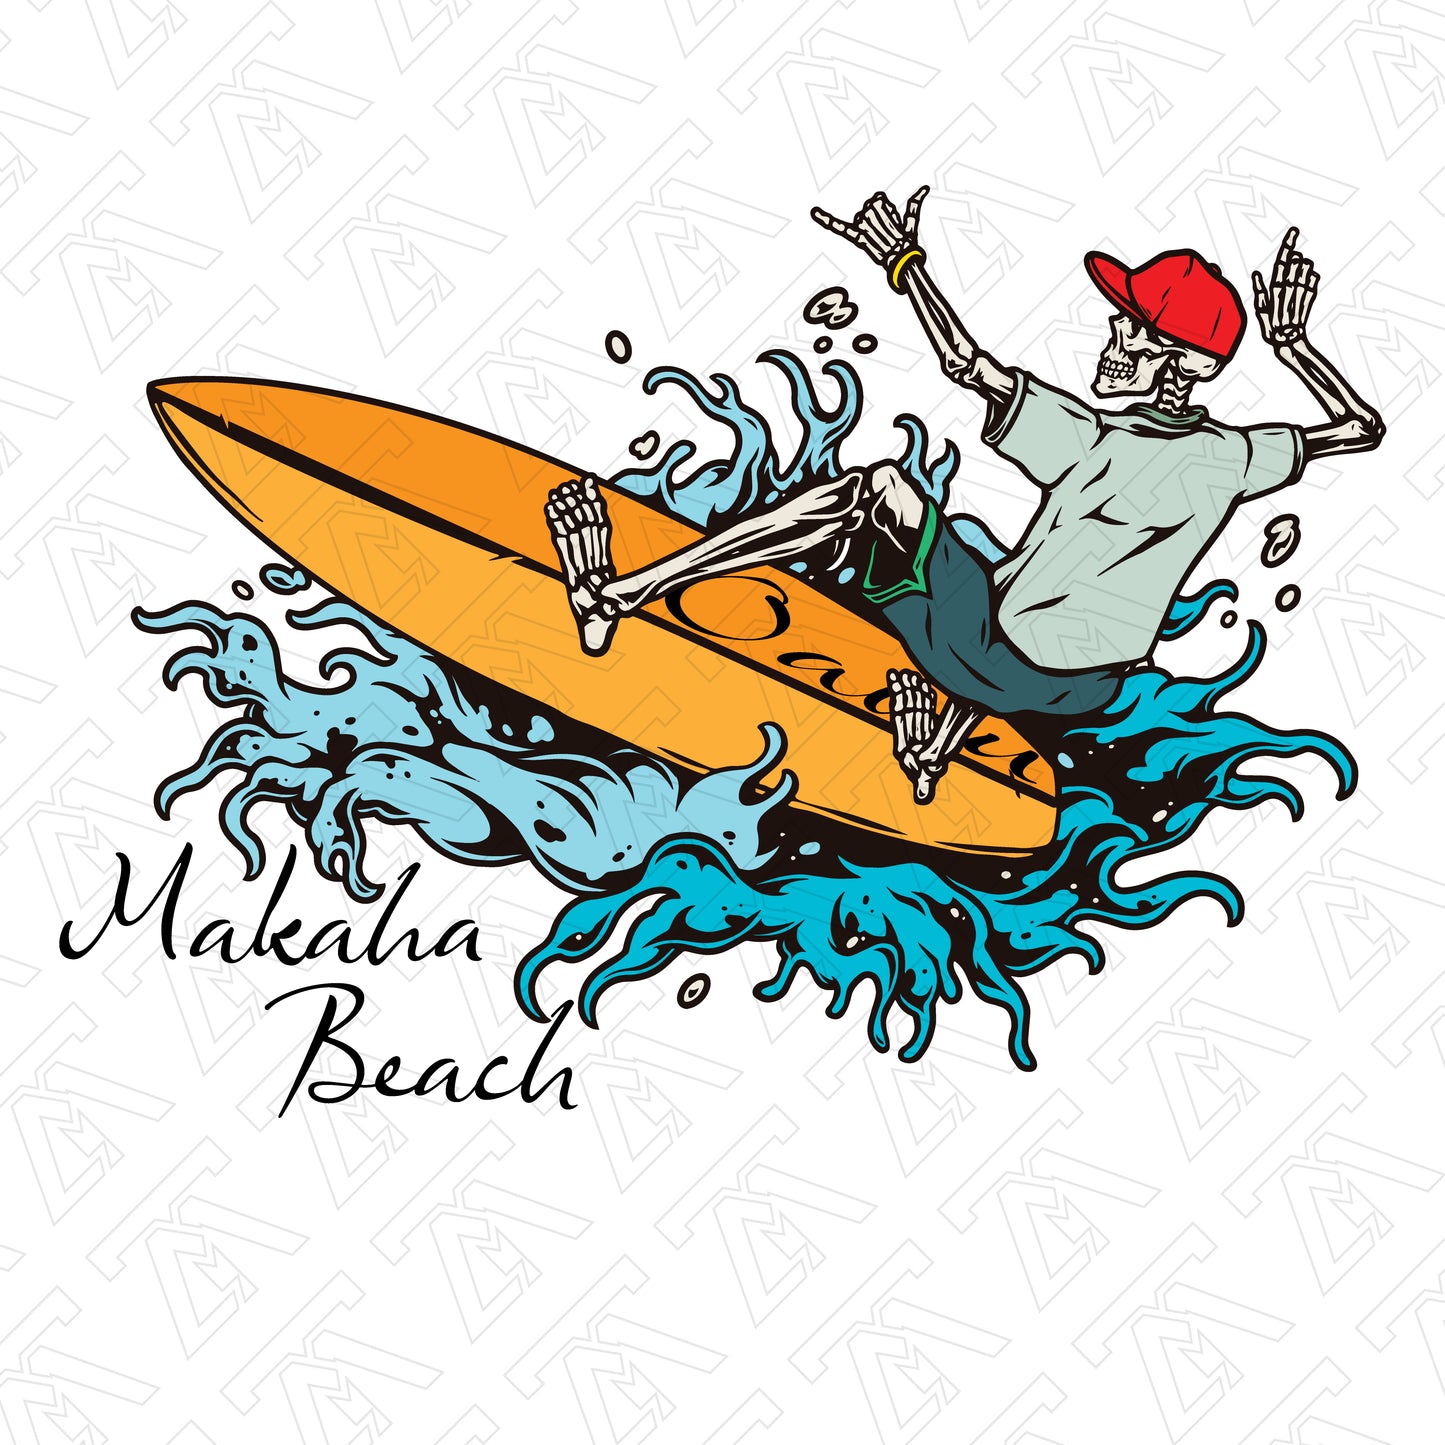 Makaha Beach